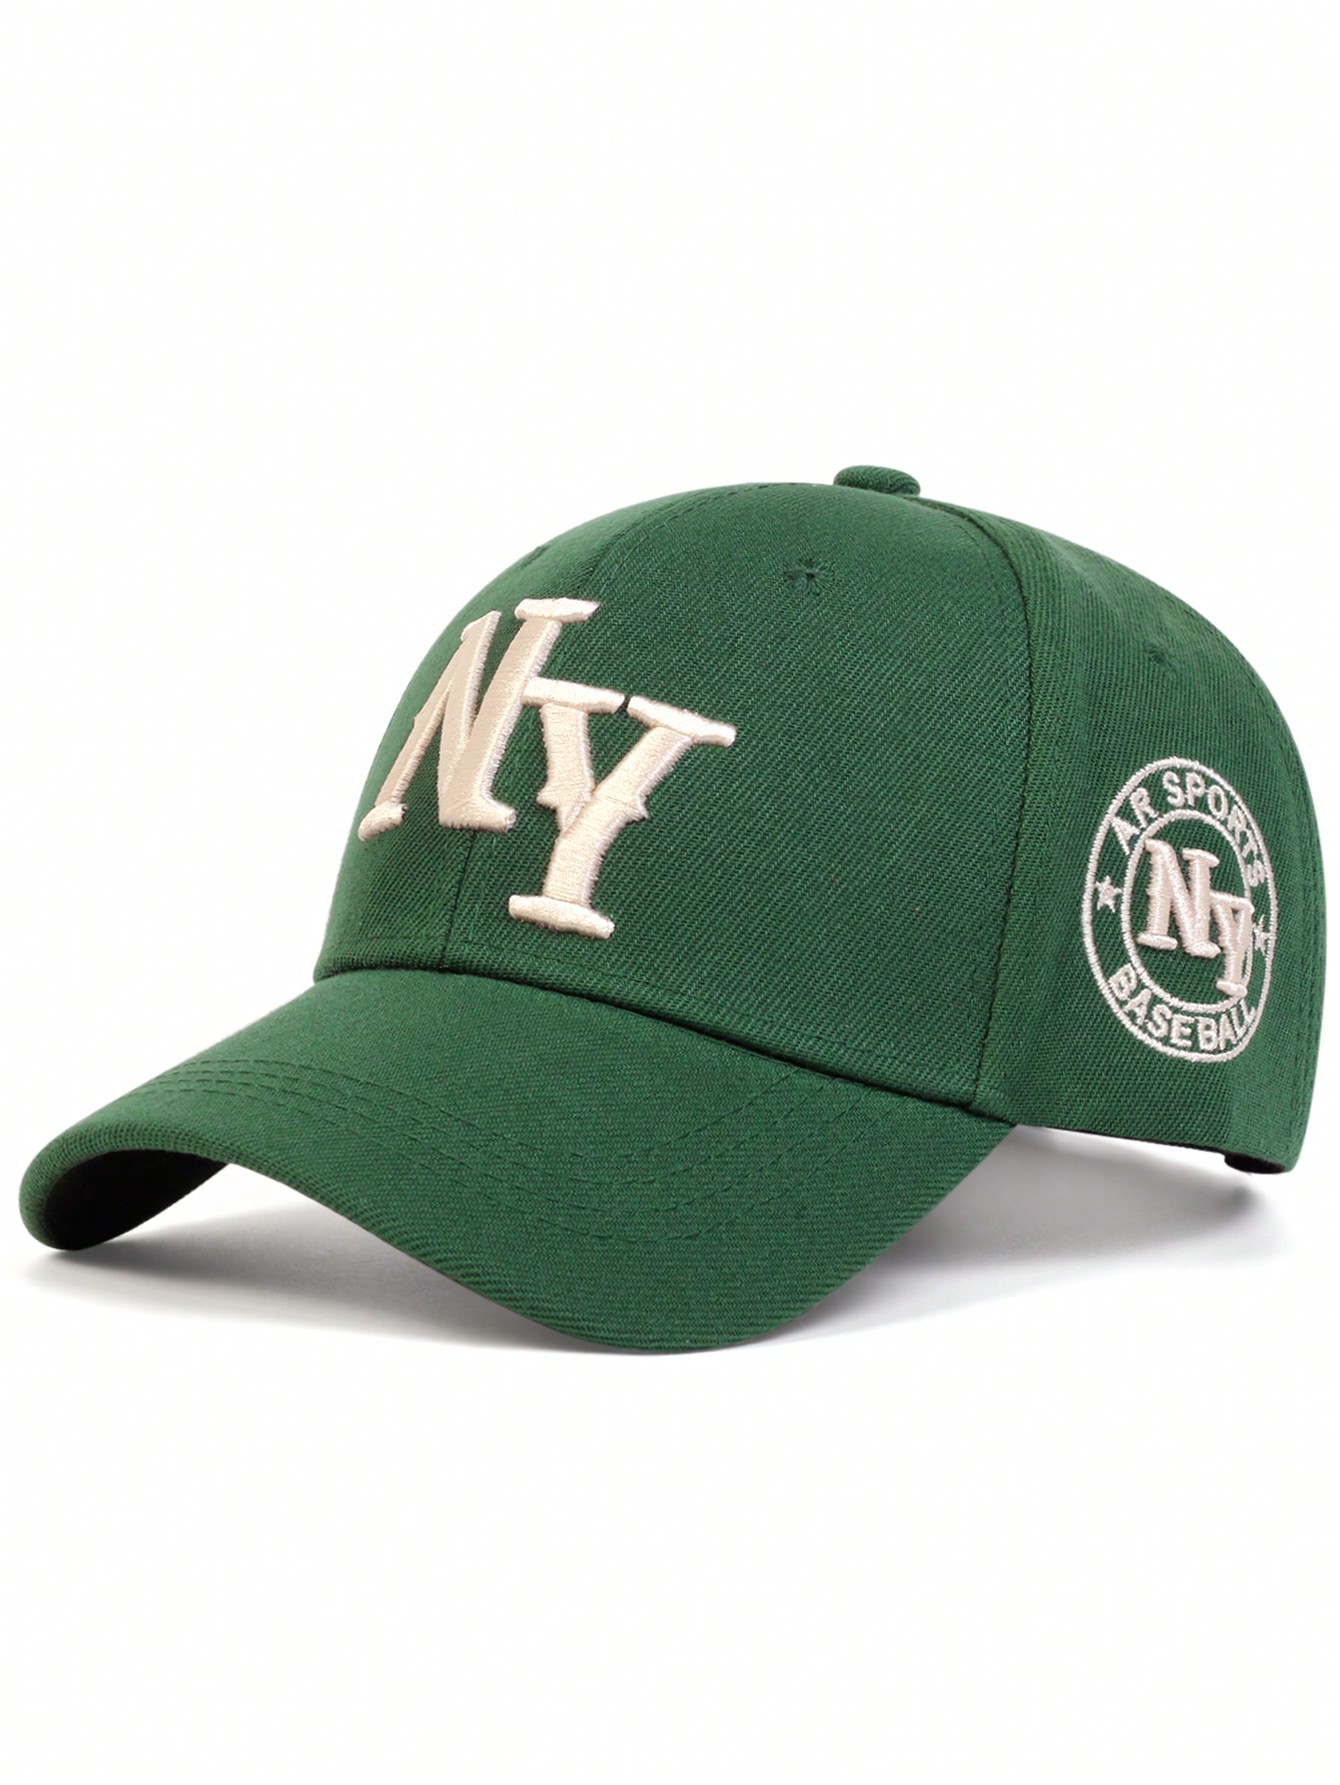 1 шт. мужская бейсболка с вышивкой букв «Нью-Йорк», зеленый бейсболка с вышивкой букв летняя мужская и женская модная универсальная кепка с козырьком в корейском стиле делает лицо маленьким